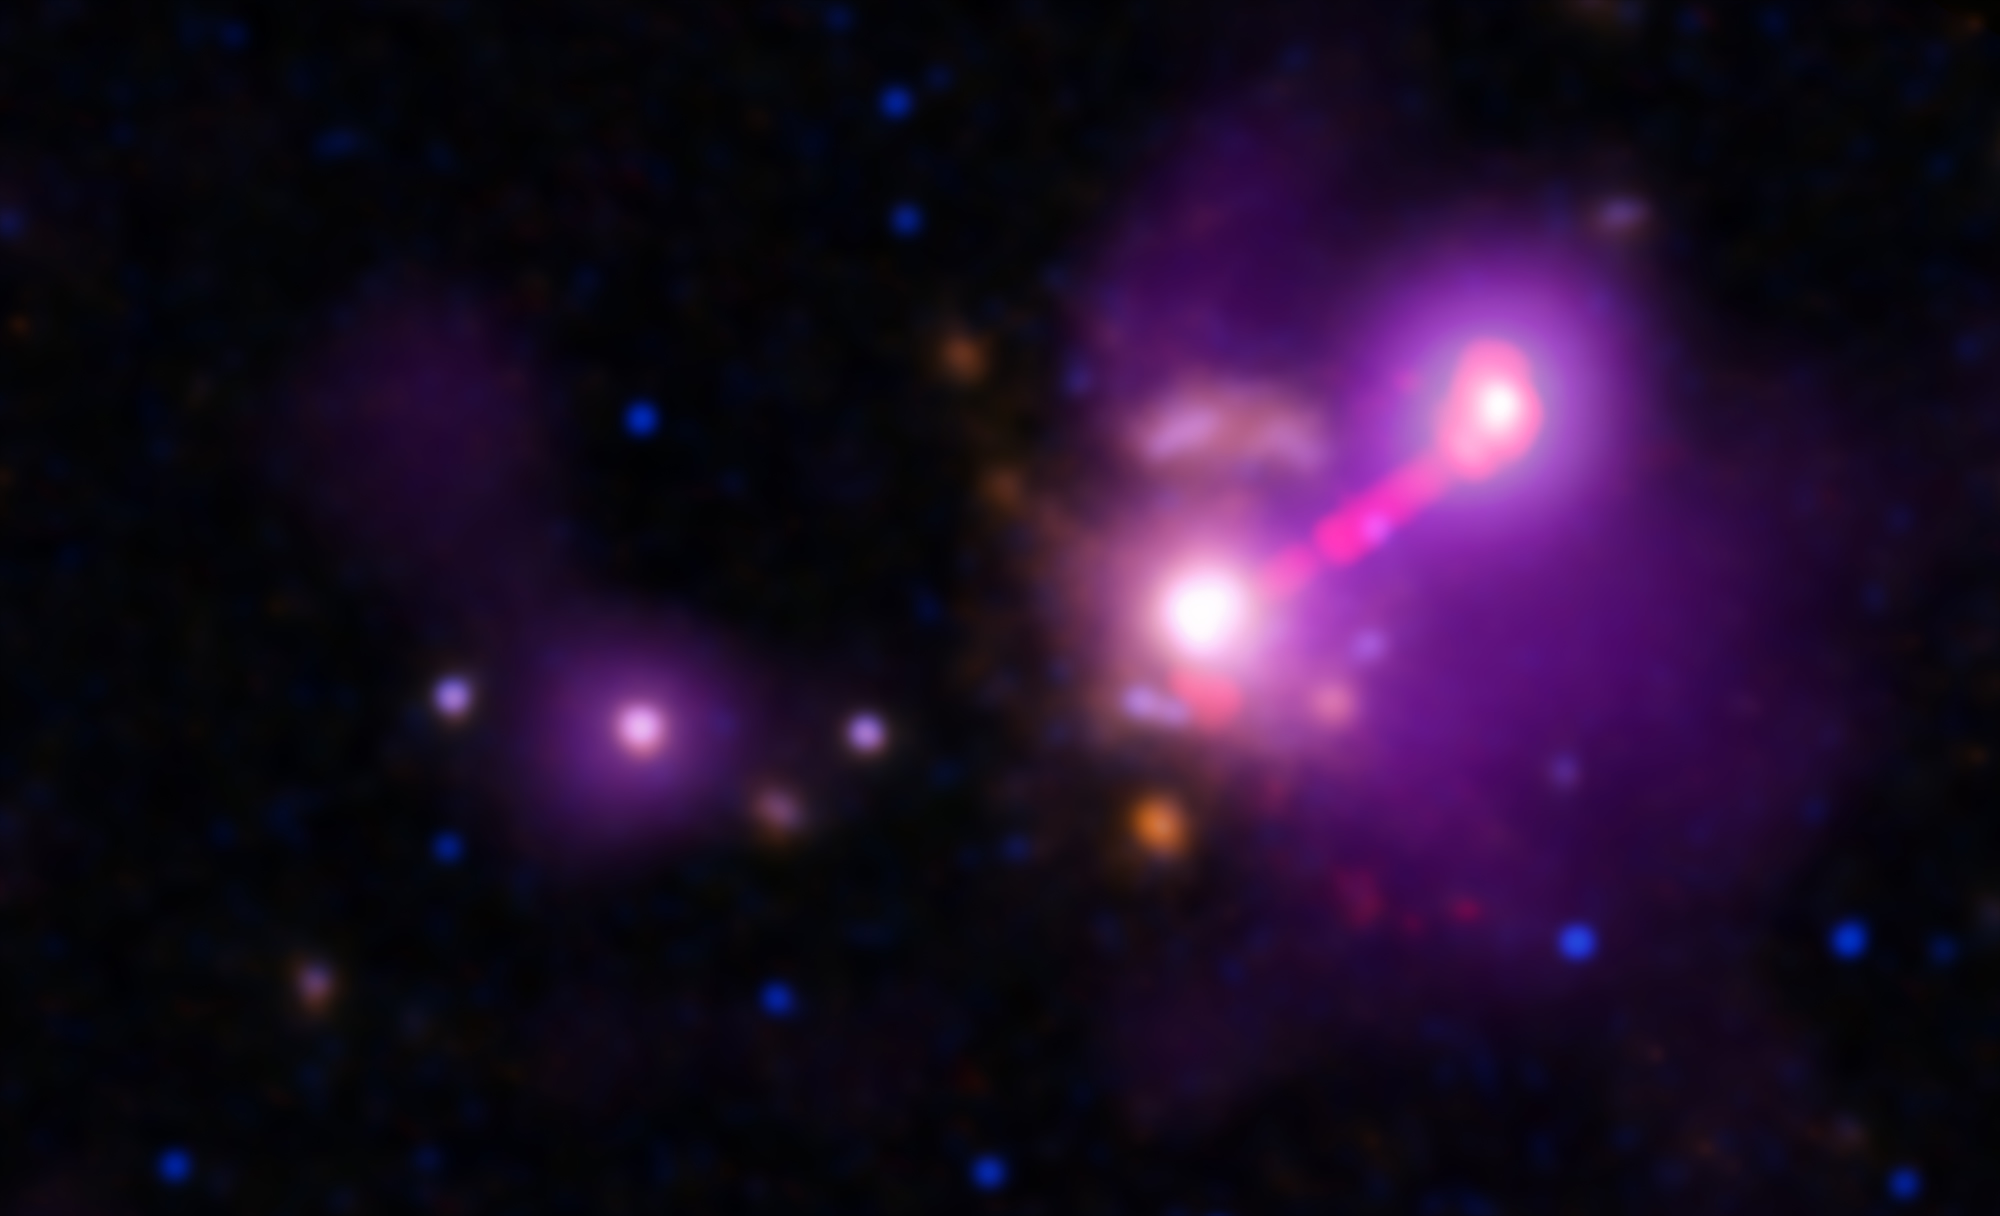 钱德拉帮助天文学家发现了一个异常孤独的星系3C 297